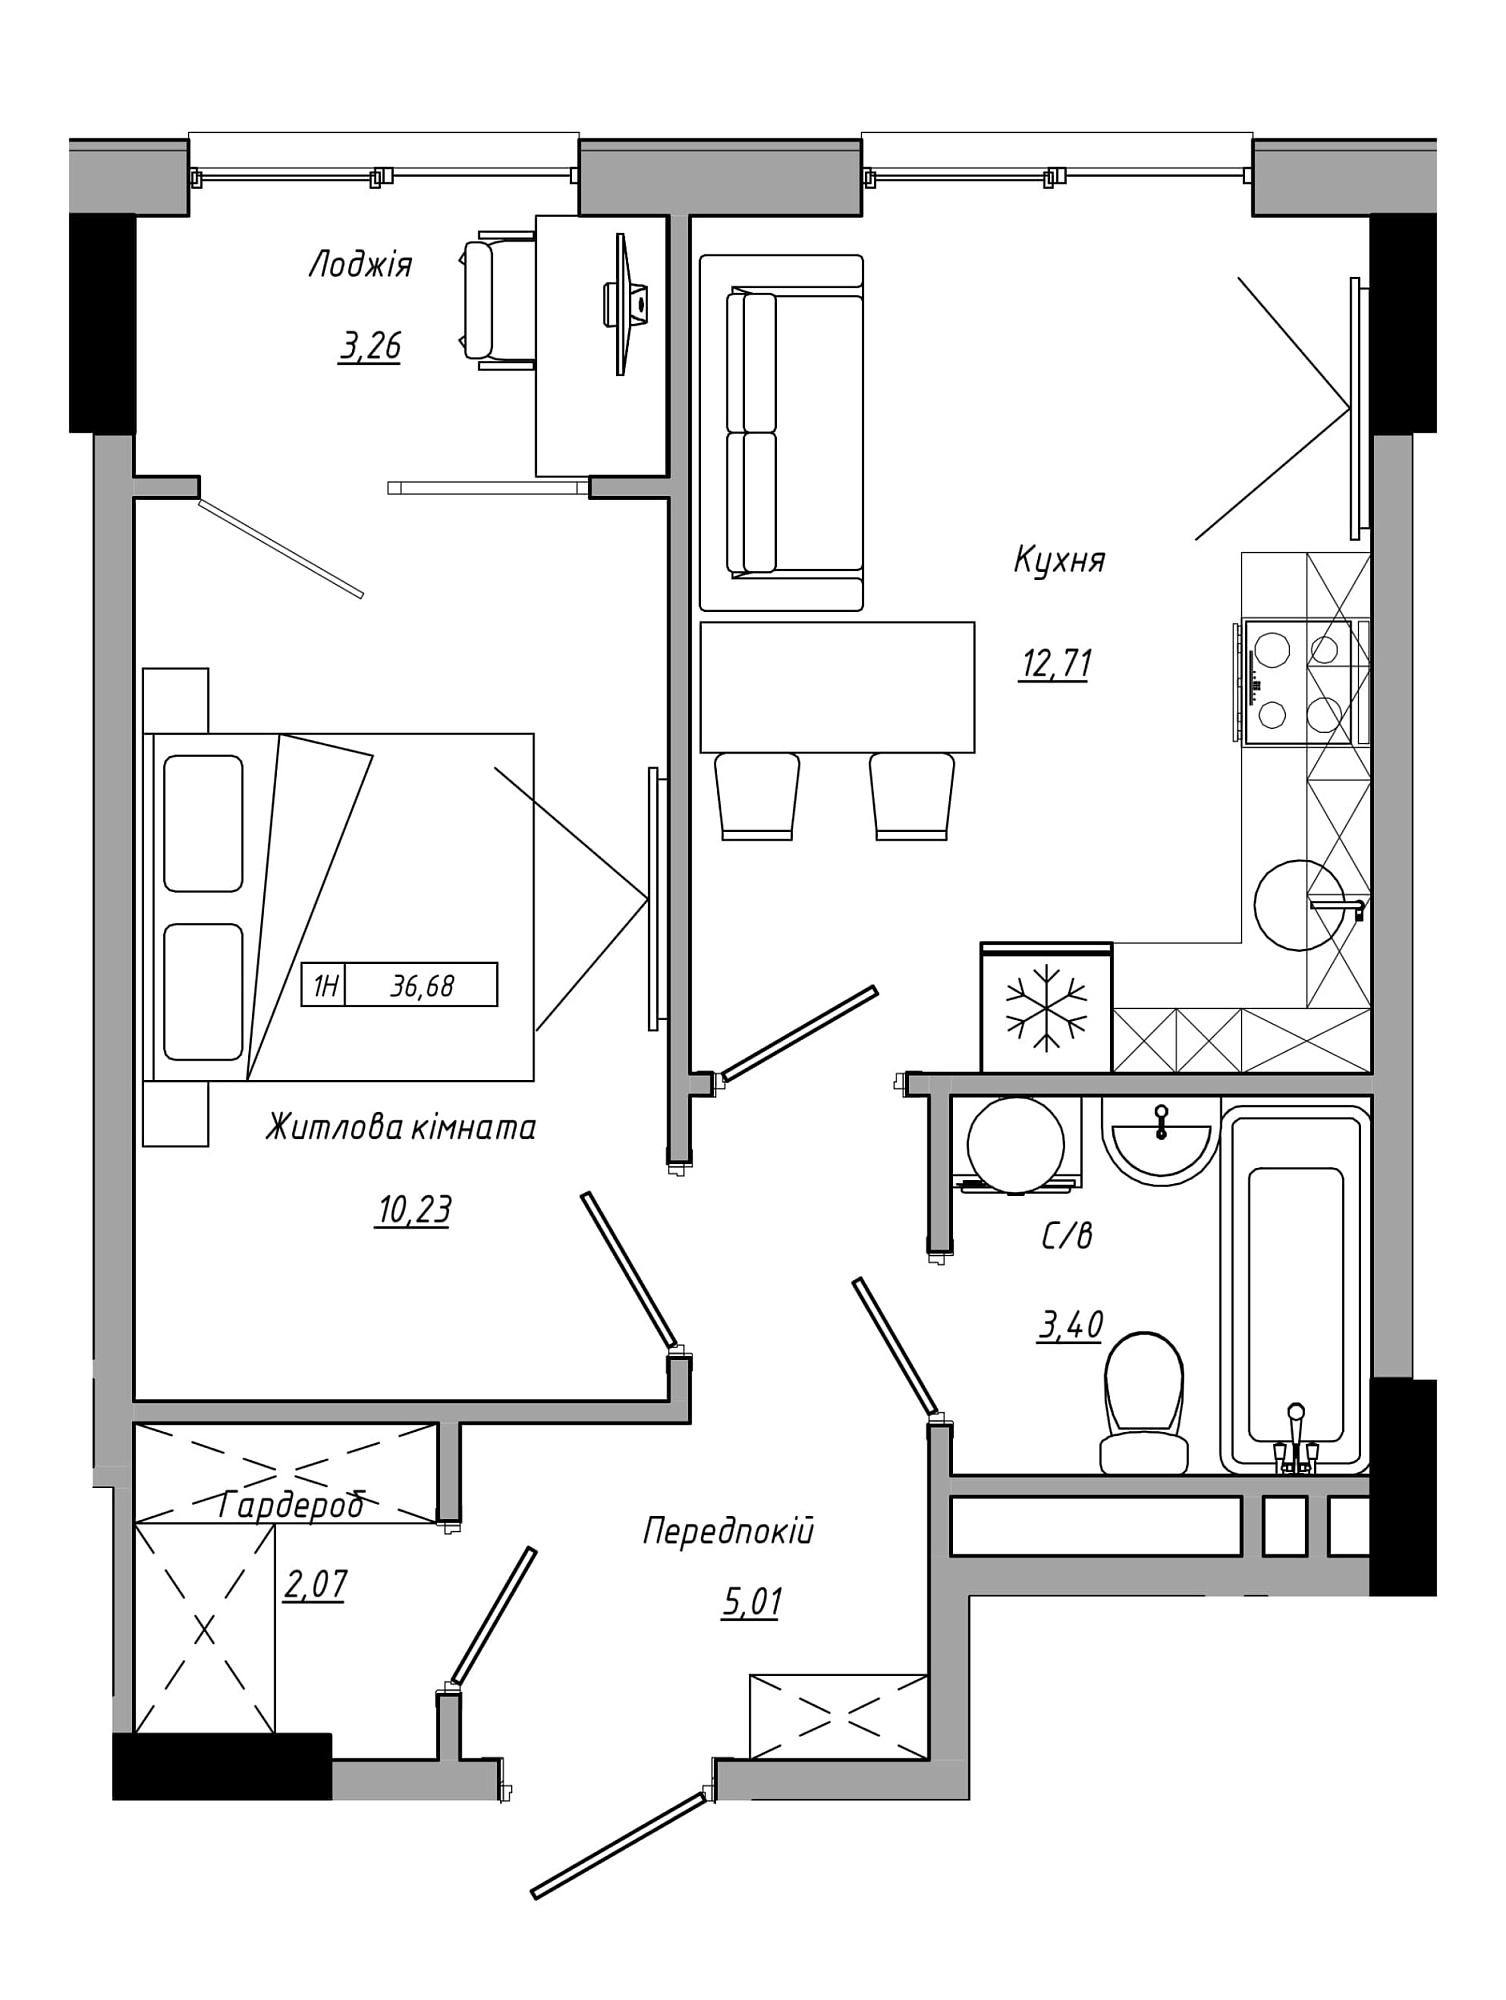 Планировка 1-к квартира площей 36.68м2, AB-21-07/00016.